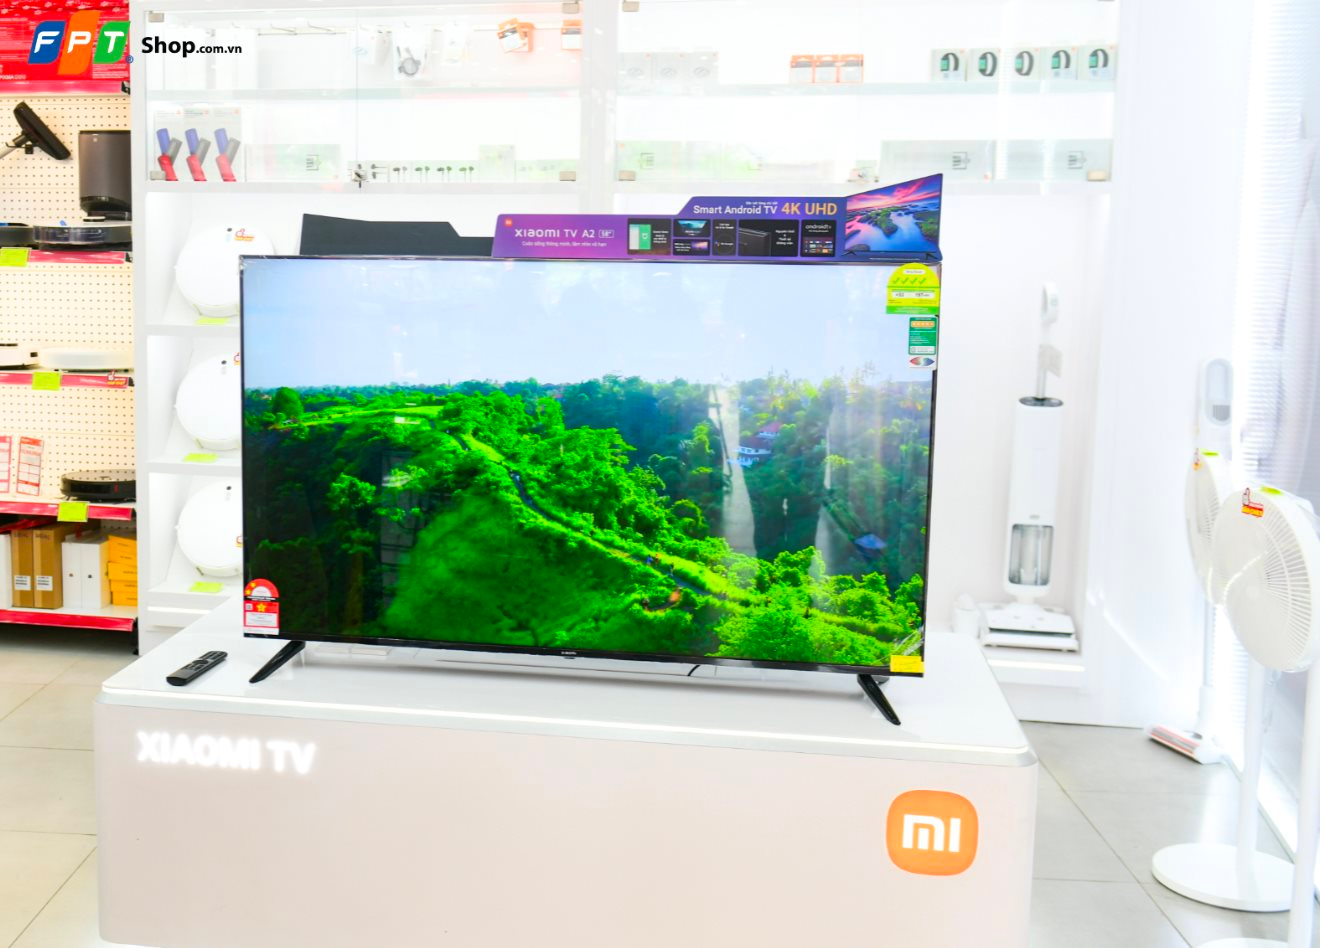 Sau cú “bao chấp ở đâu rẻ hơn hoàn tiền” của đối thủ, đến lượt FPT Shop tung khuyến mãi 40% cho dòng TV thông minh Xiaomi - Ảnh 1.